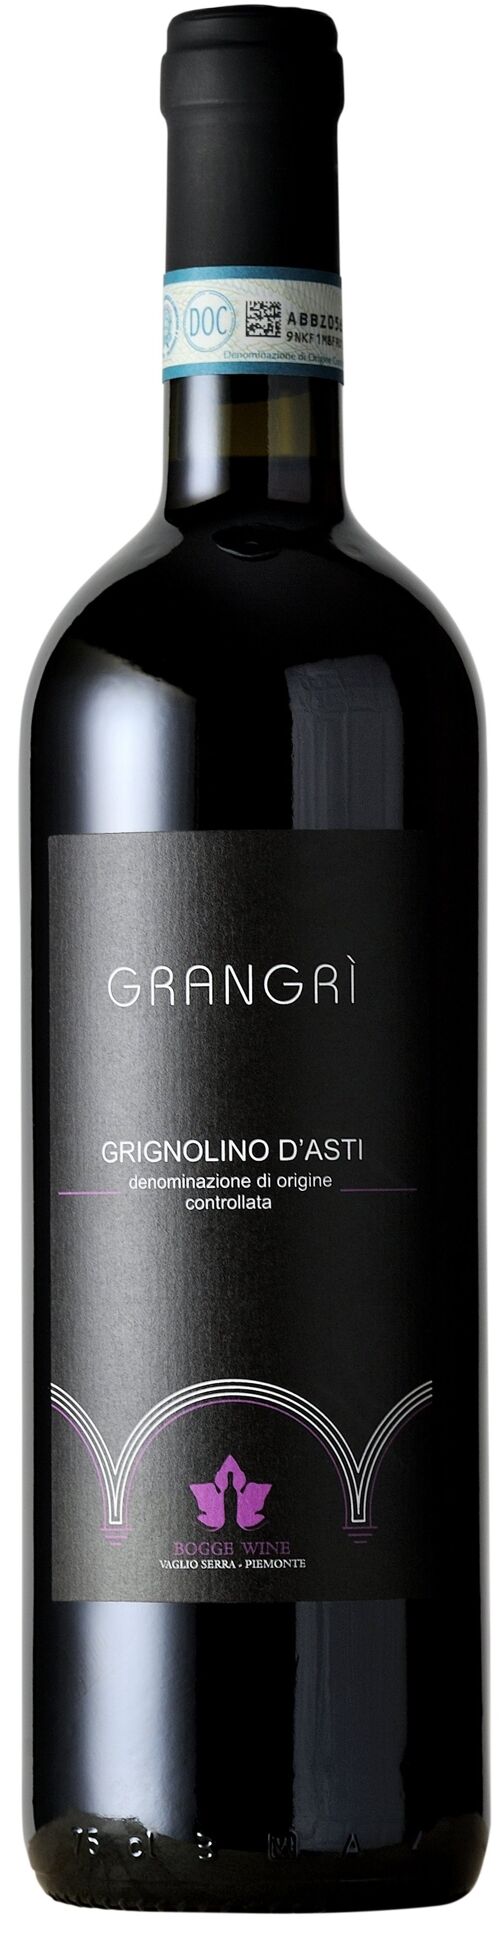 Grignolino d'Asti"Grangri'"bott 0,75 L